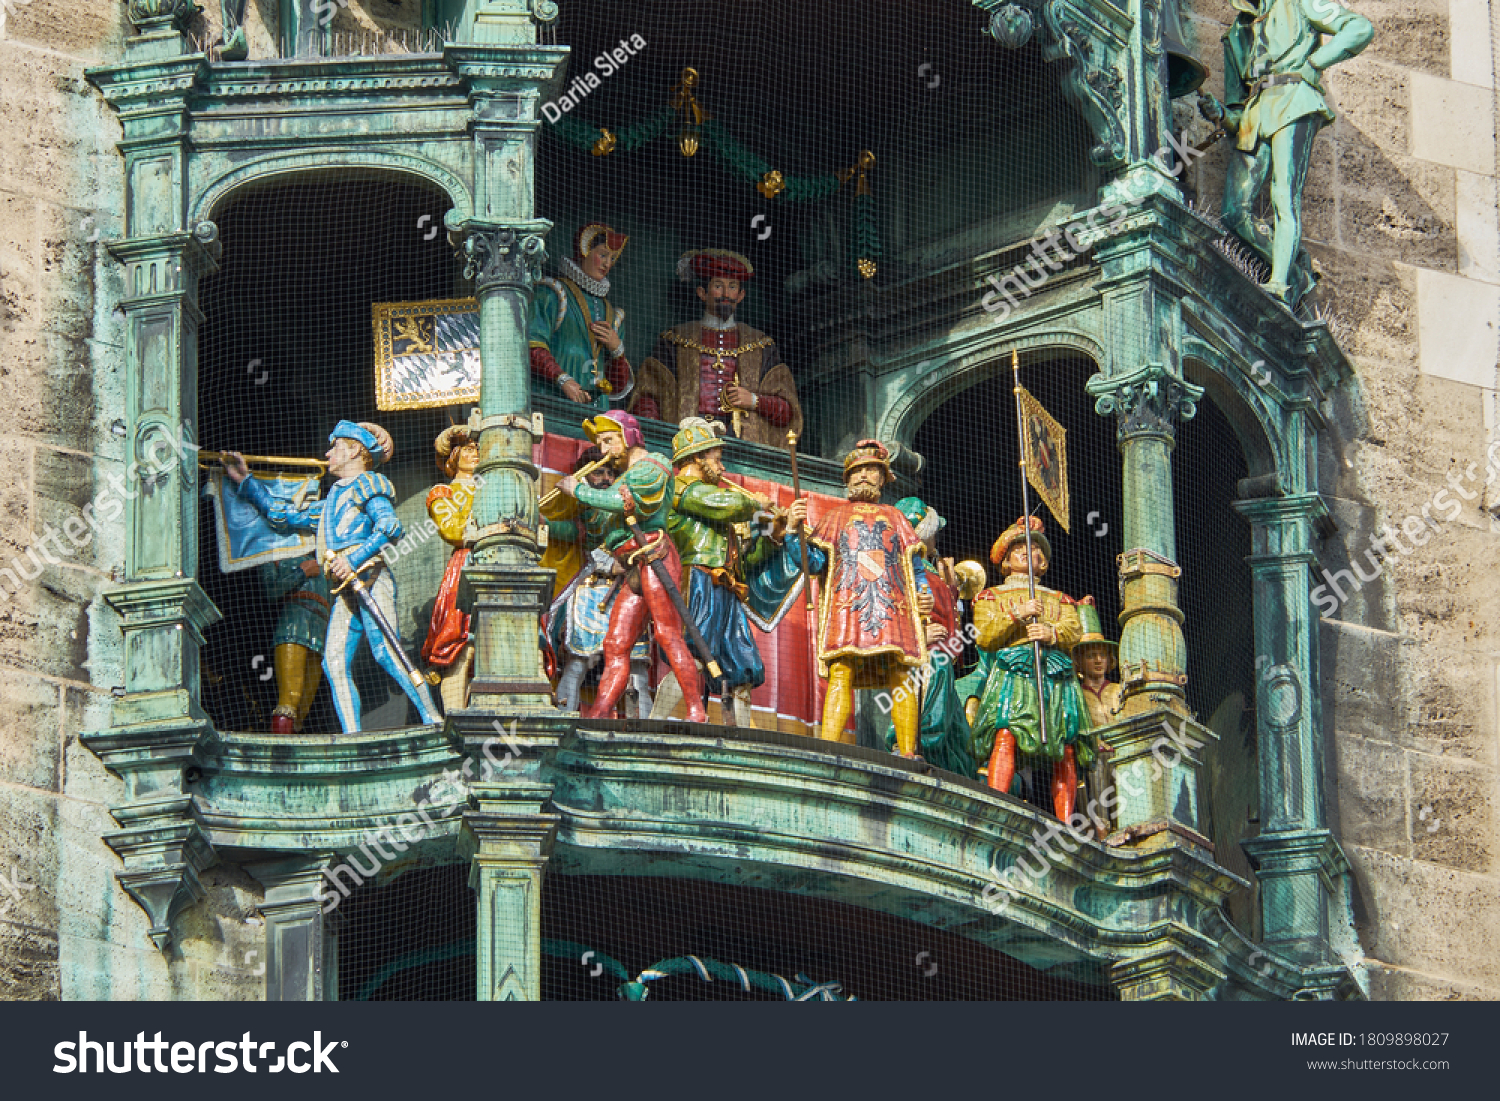 Glockenspiel of The New Town Hall (Neues Rathaus) at Marienplatz in Munich, Bavaria, Germany #1809898027